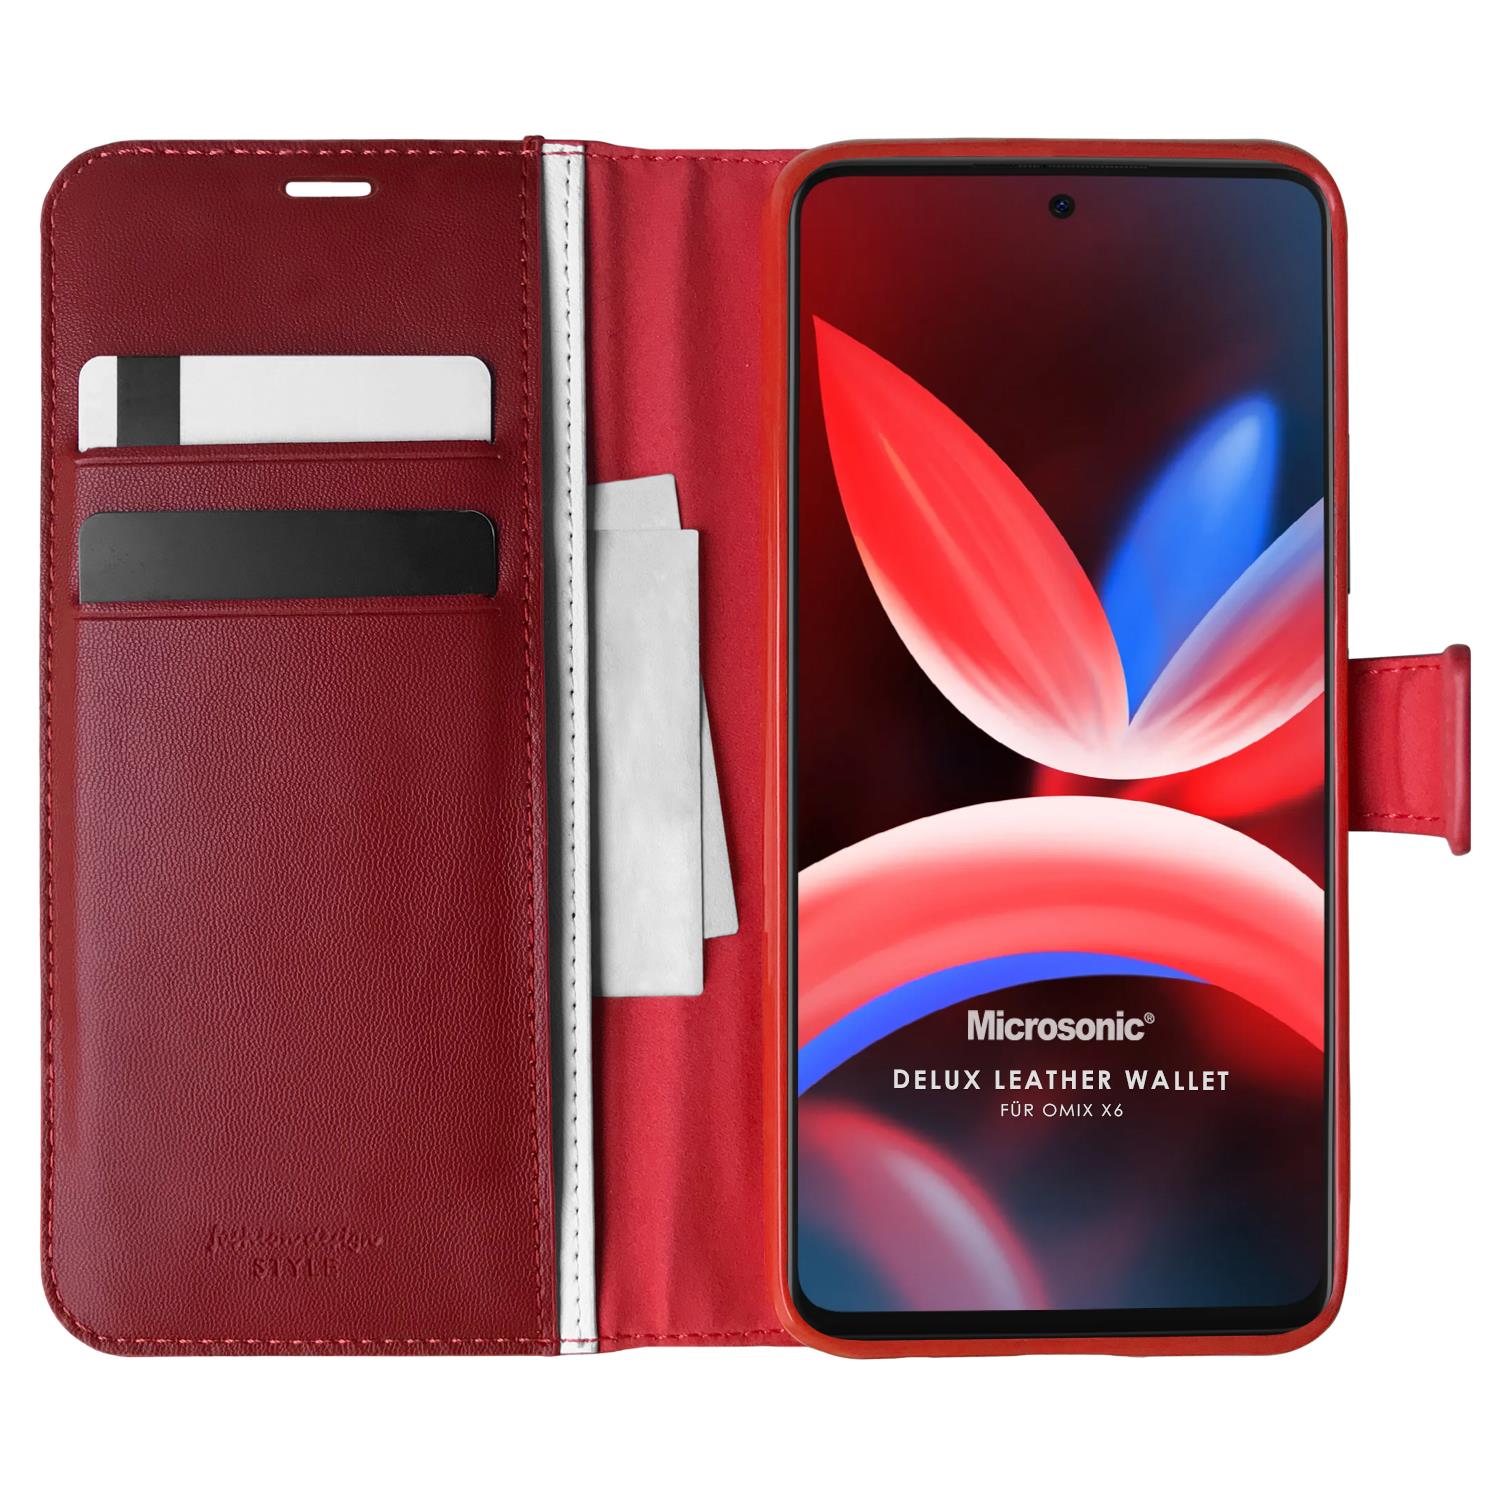 Microsonic Omix X6 Kılıf Delux Leather Wallet Kırmızı